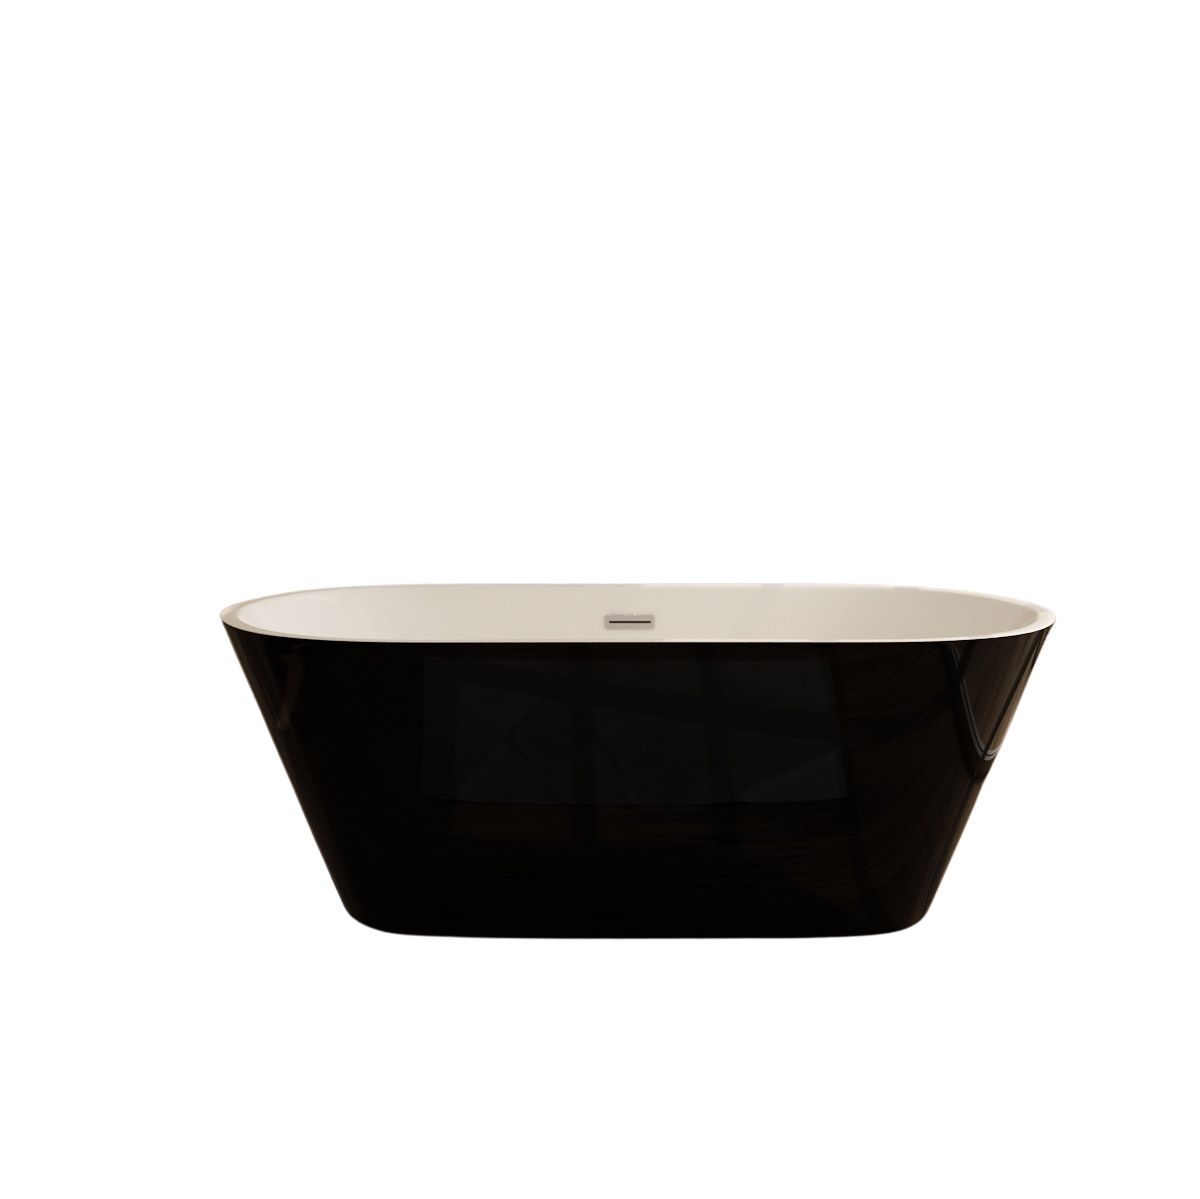 Schwarz-weiße Badewanne aus Sanitäracryl Lugano - 3 GRÖßEN